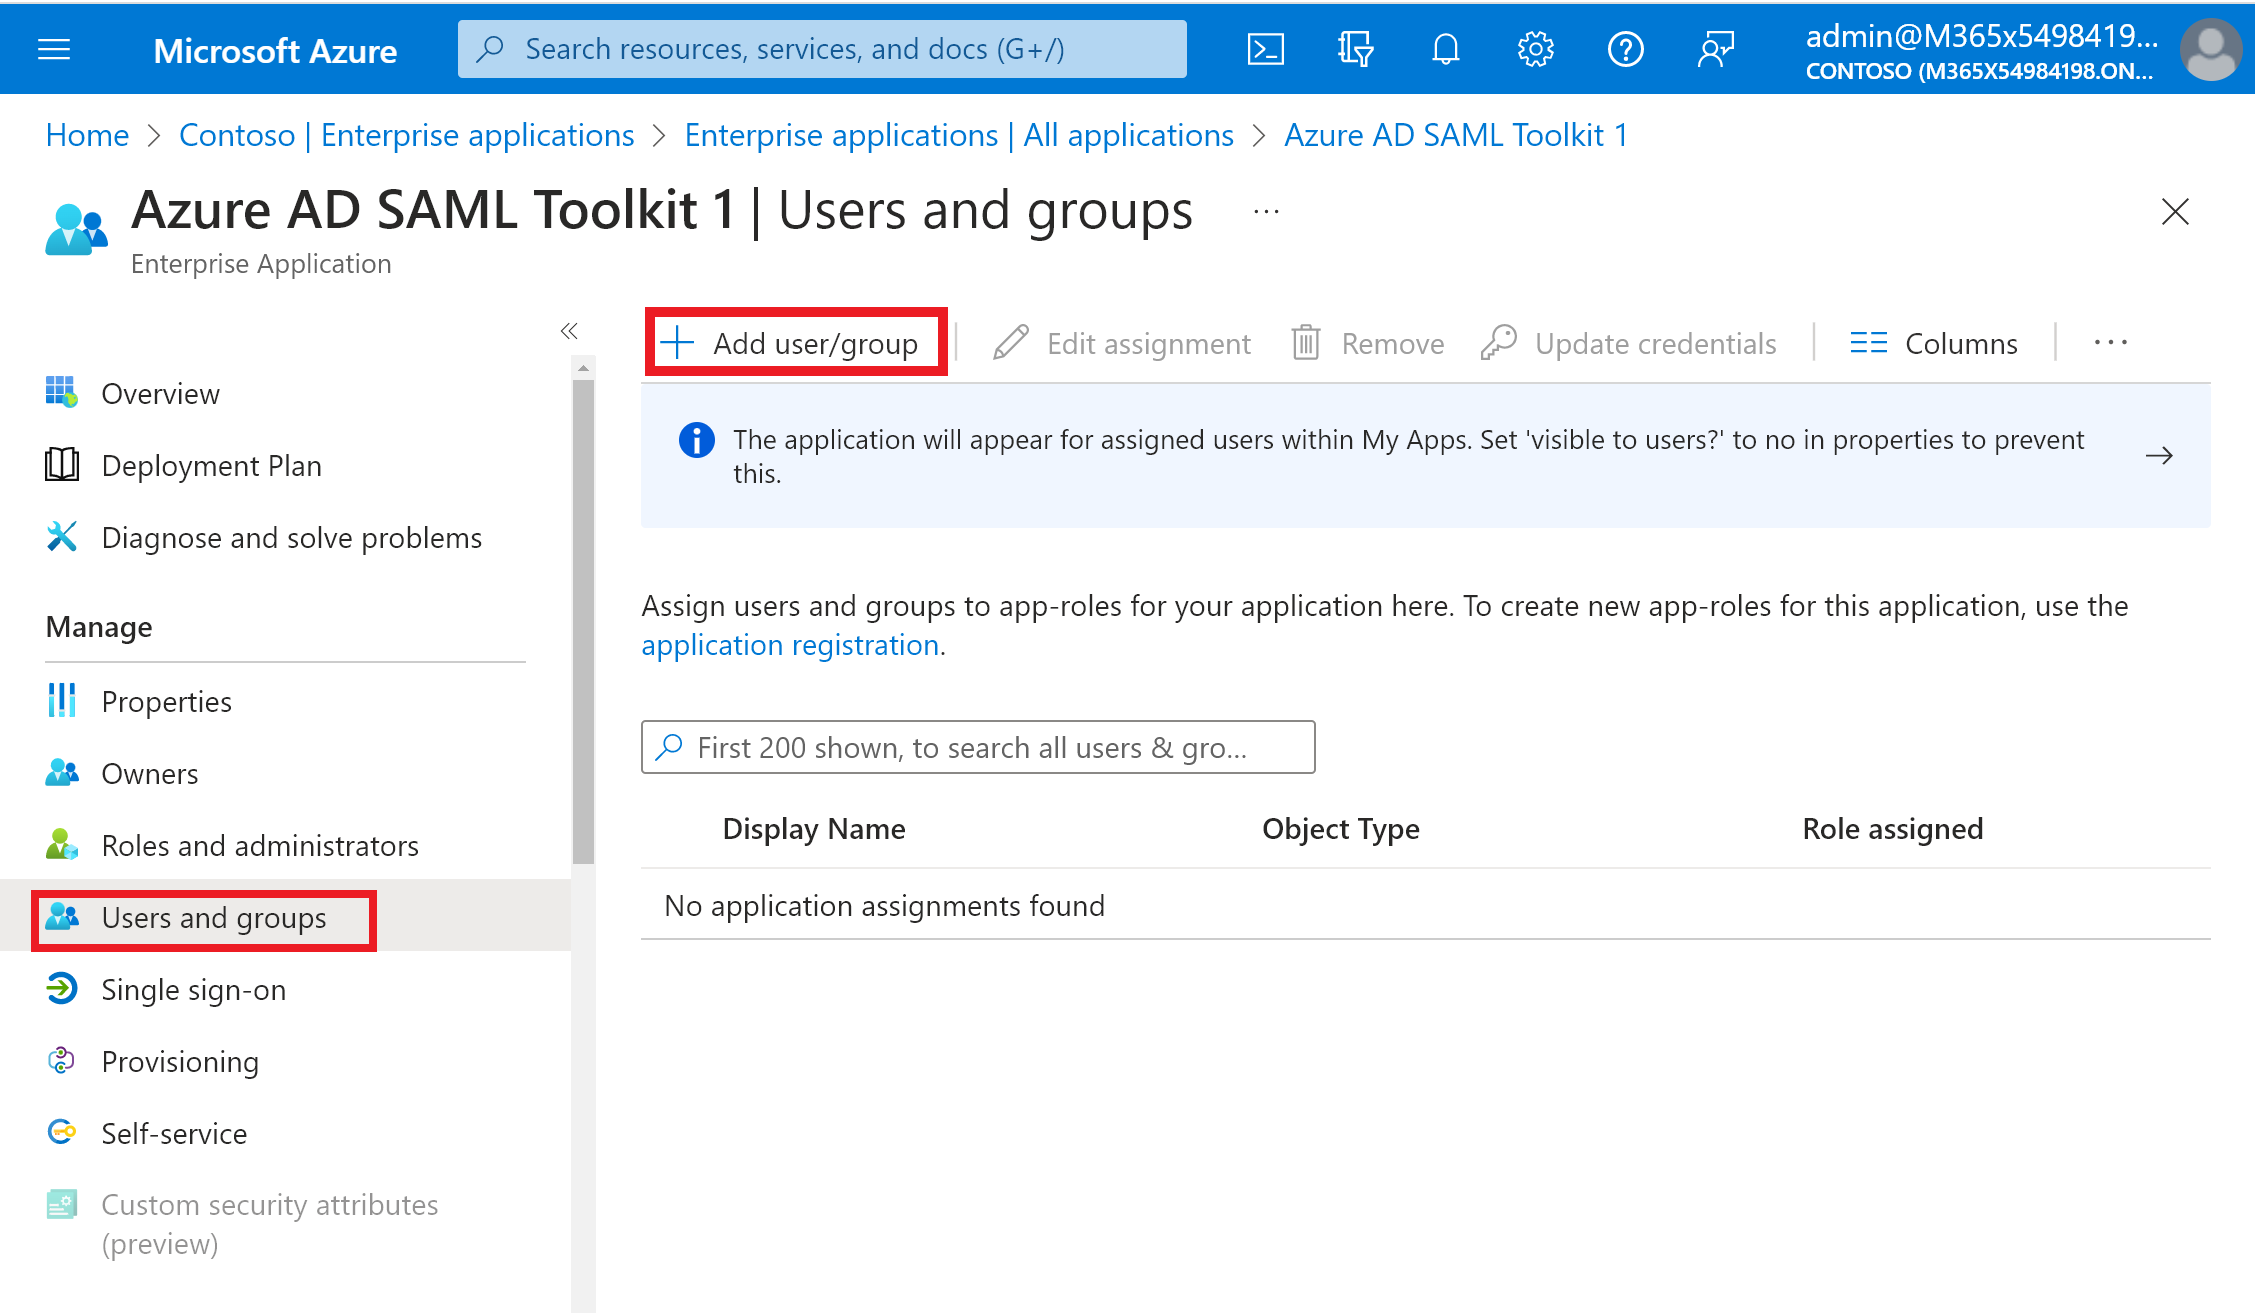 Felhasználói fiók hozzárendelése egy alkalmazáshoz a Microsoft Entra-bérlőben.